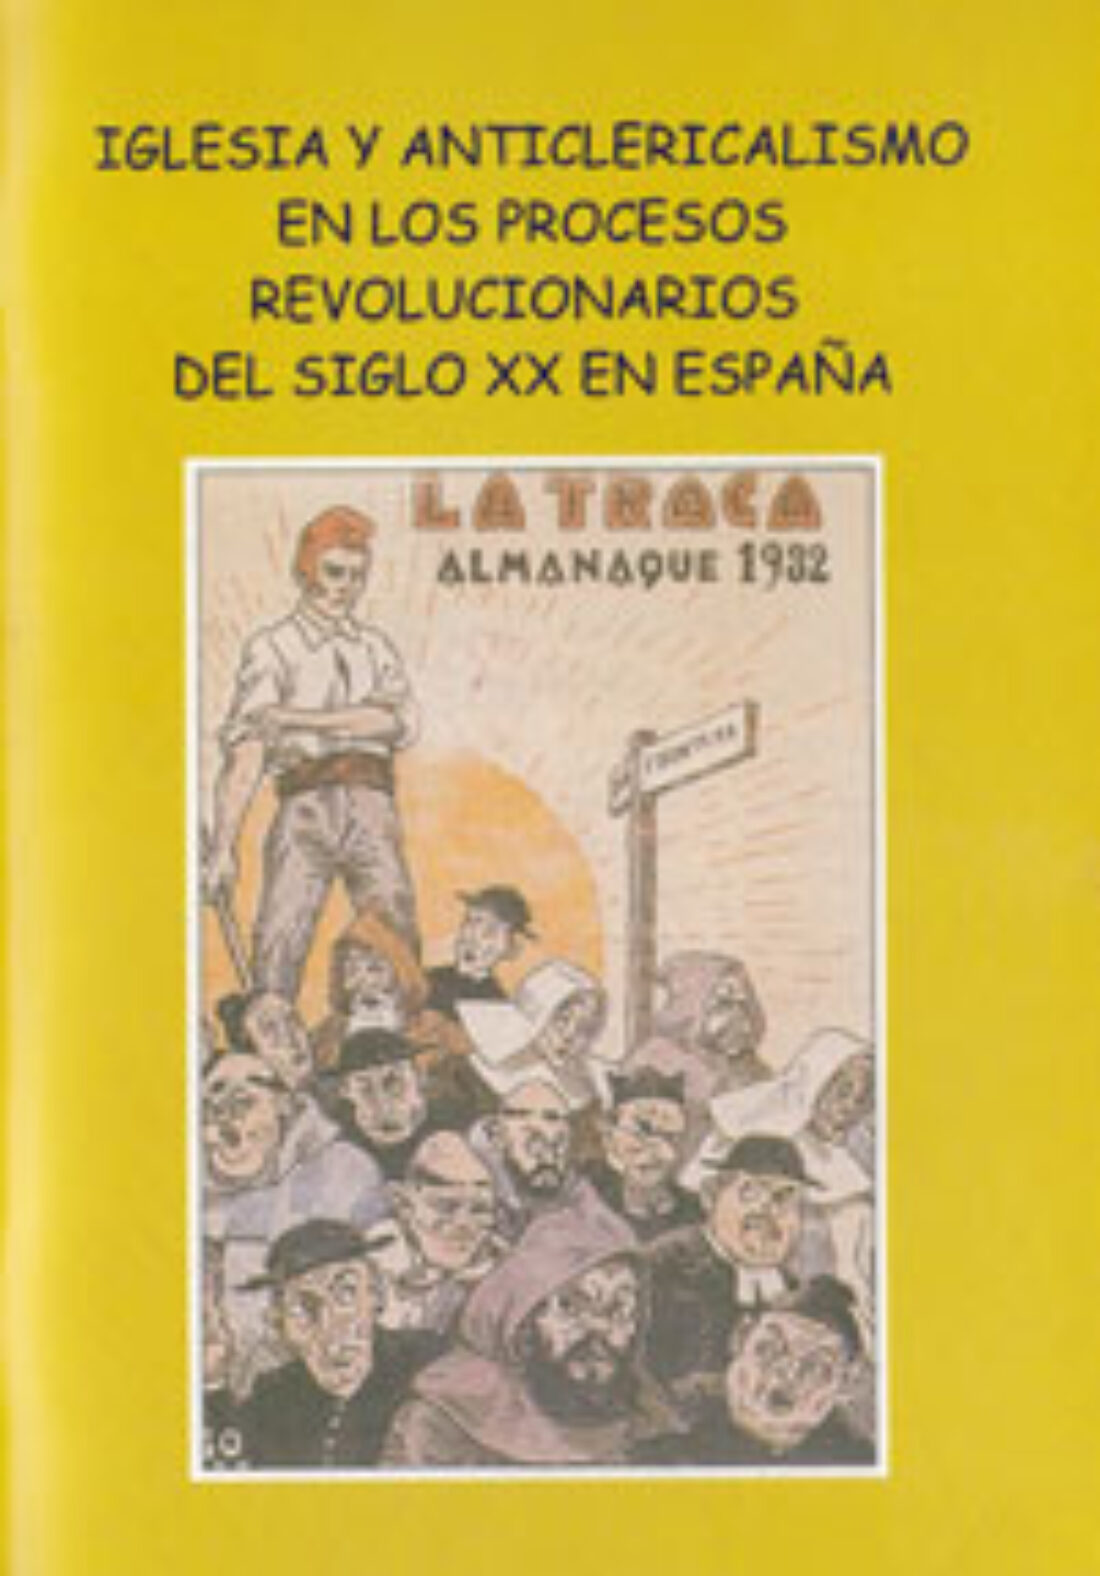 Madrid: Presentación «Iglesia y anticlericalismo en los procesos revolucionarios del siglo XX en España»